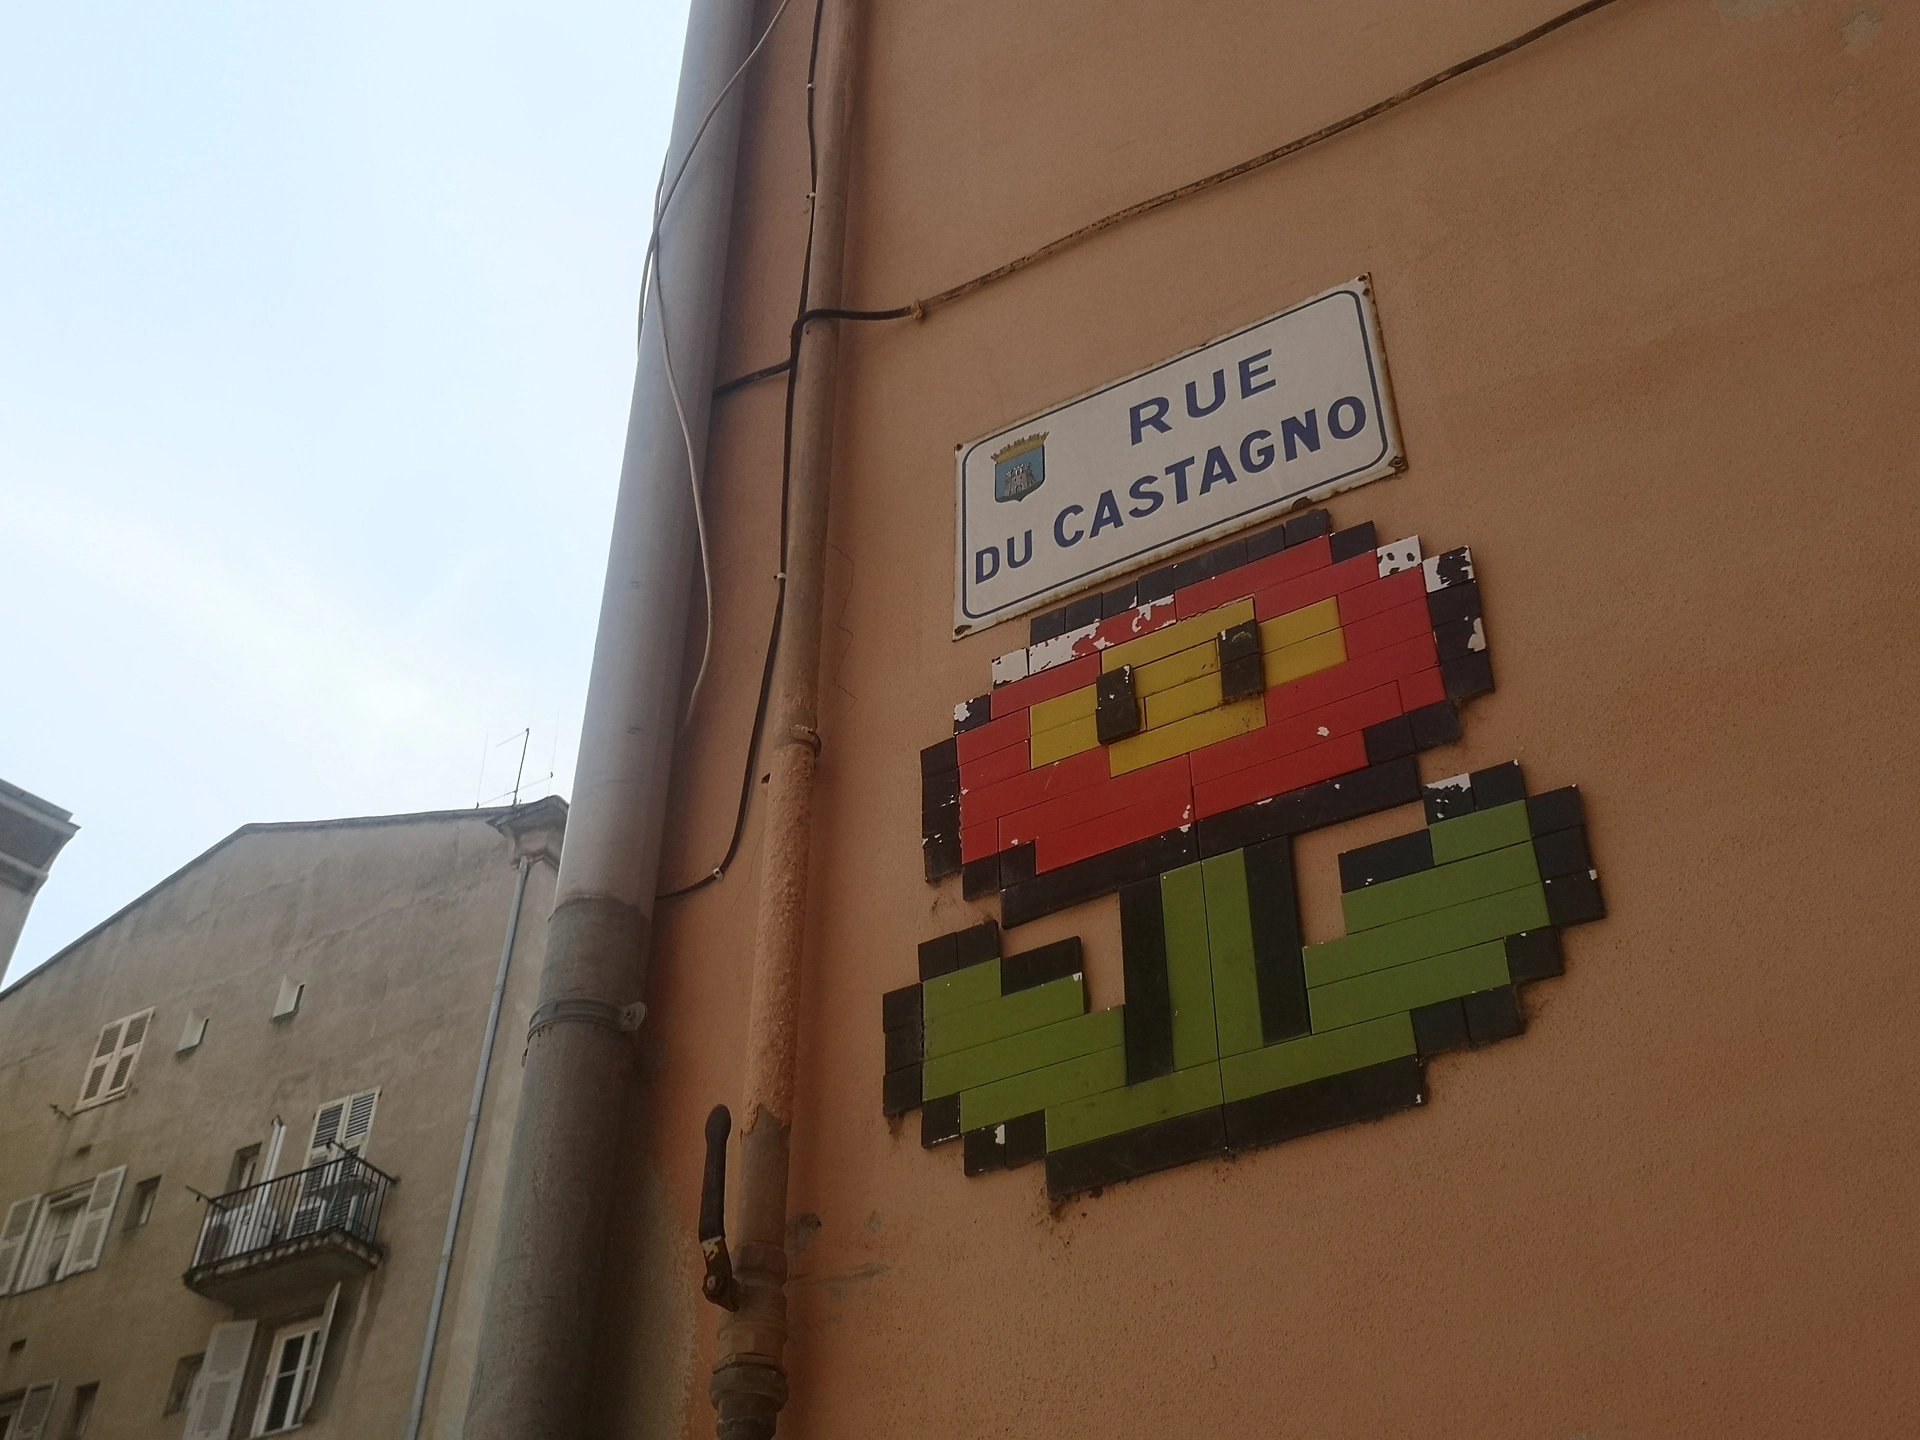 Oeuvre de Street Art à Bastia